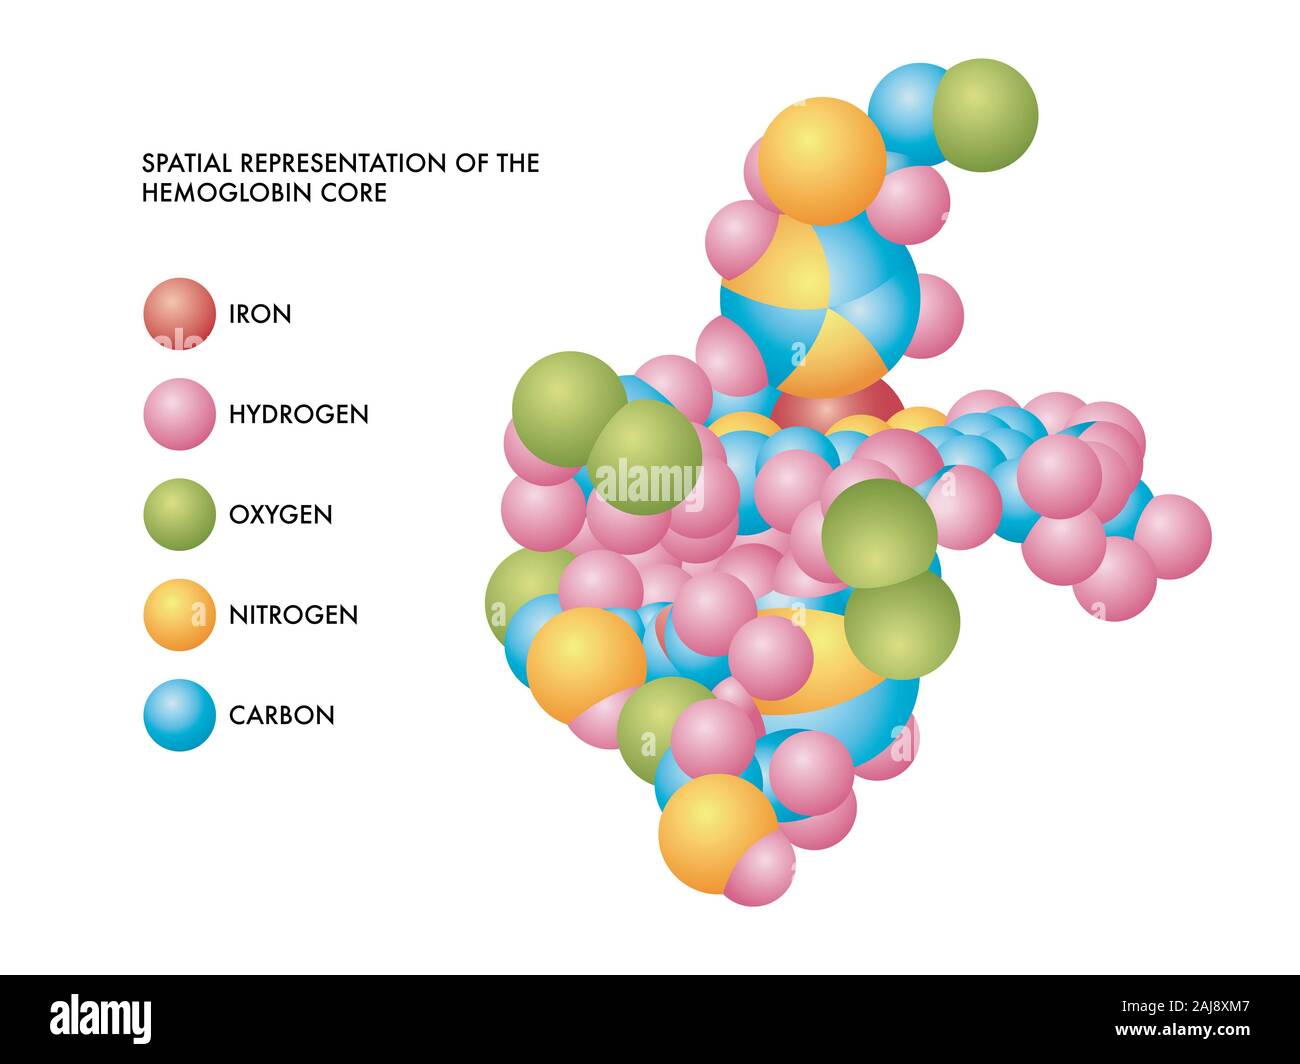 Illustration médicale de base de l'hémoglobine la représentation spatiale des molécules de fer, d'hydrogène, oxygène, azote et carbone dans les formes de couleur. Banque D'Images